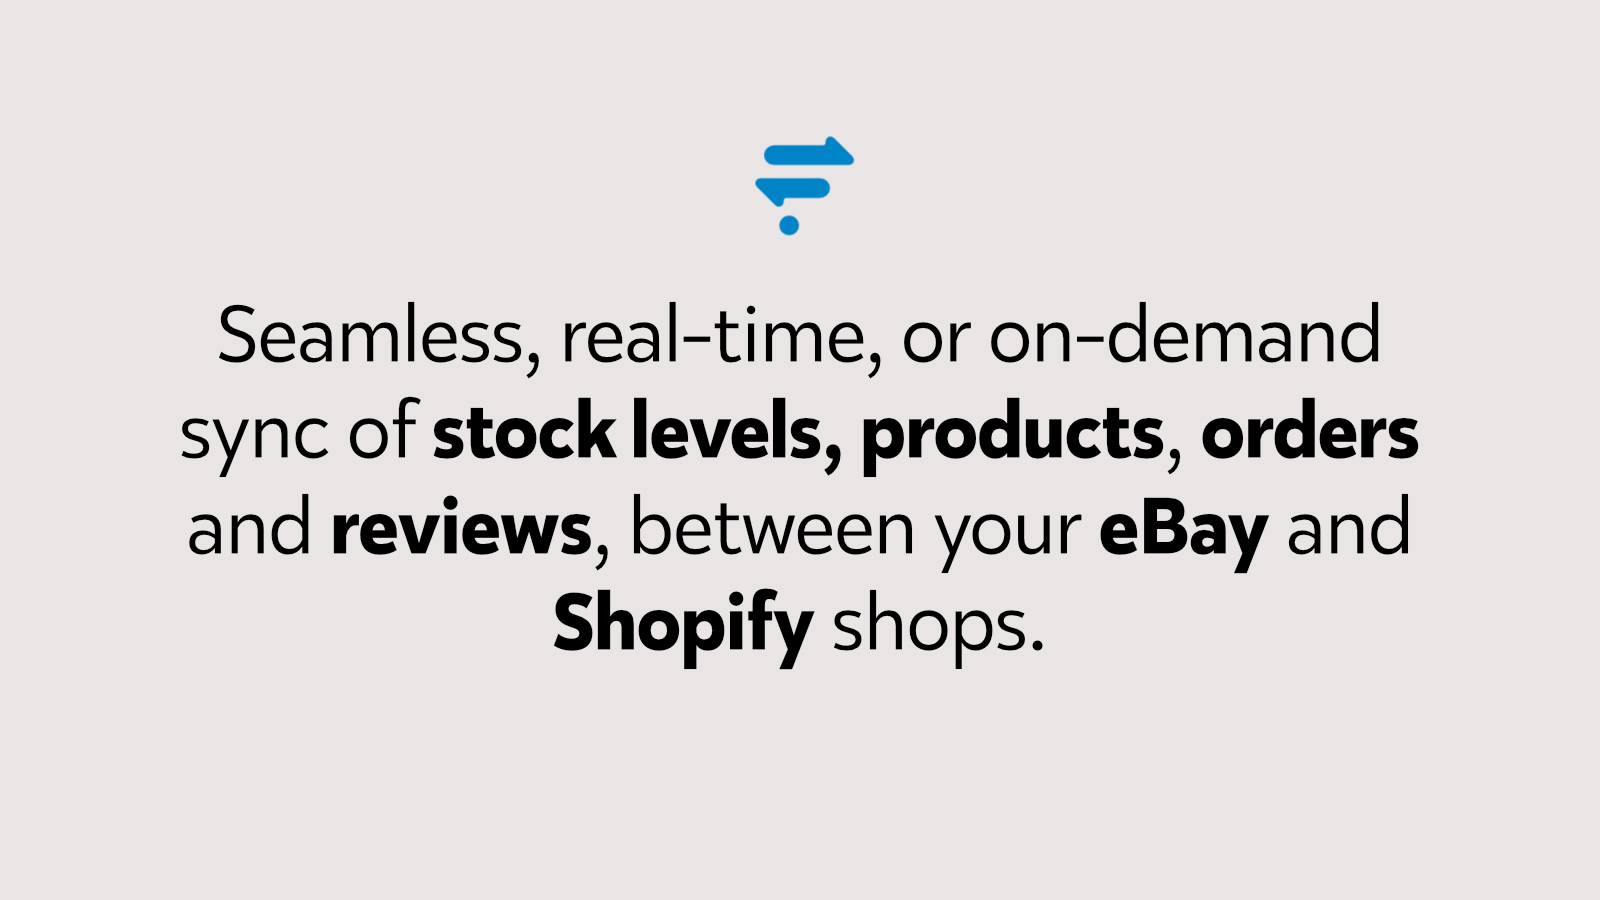 Komplet Real-Time Shop Synkronisering mellem eBay og Shopify